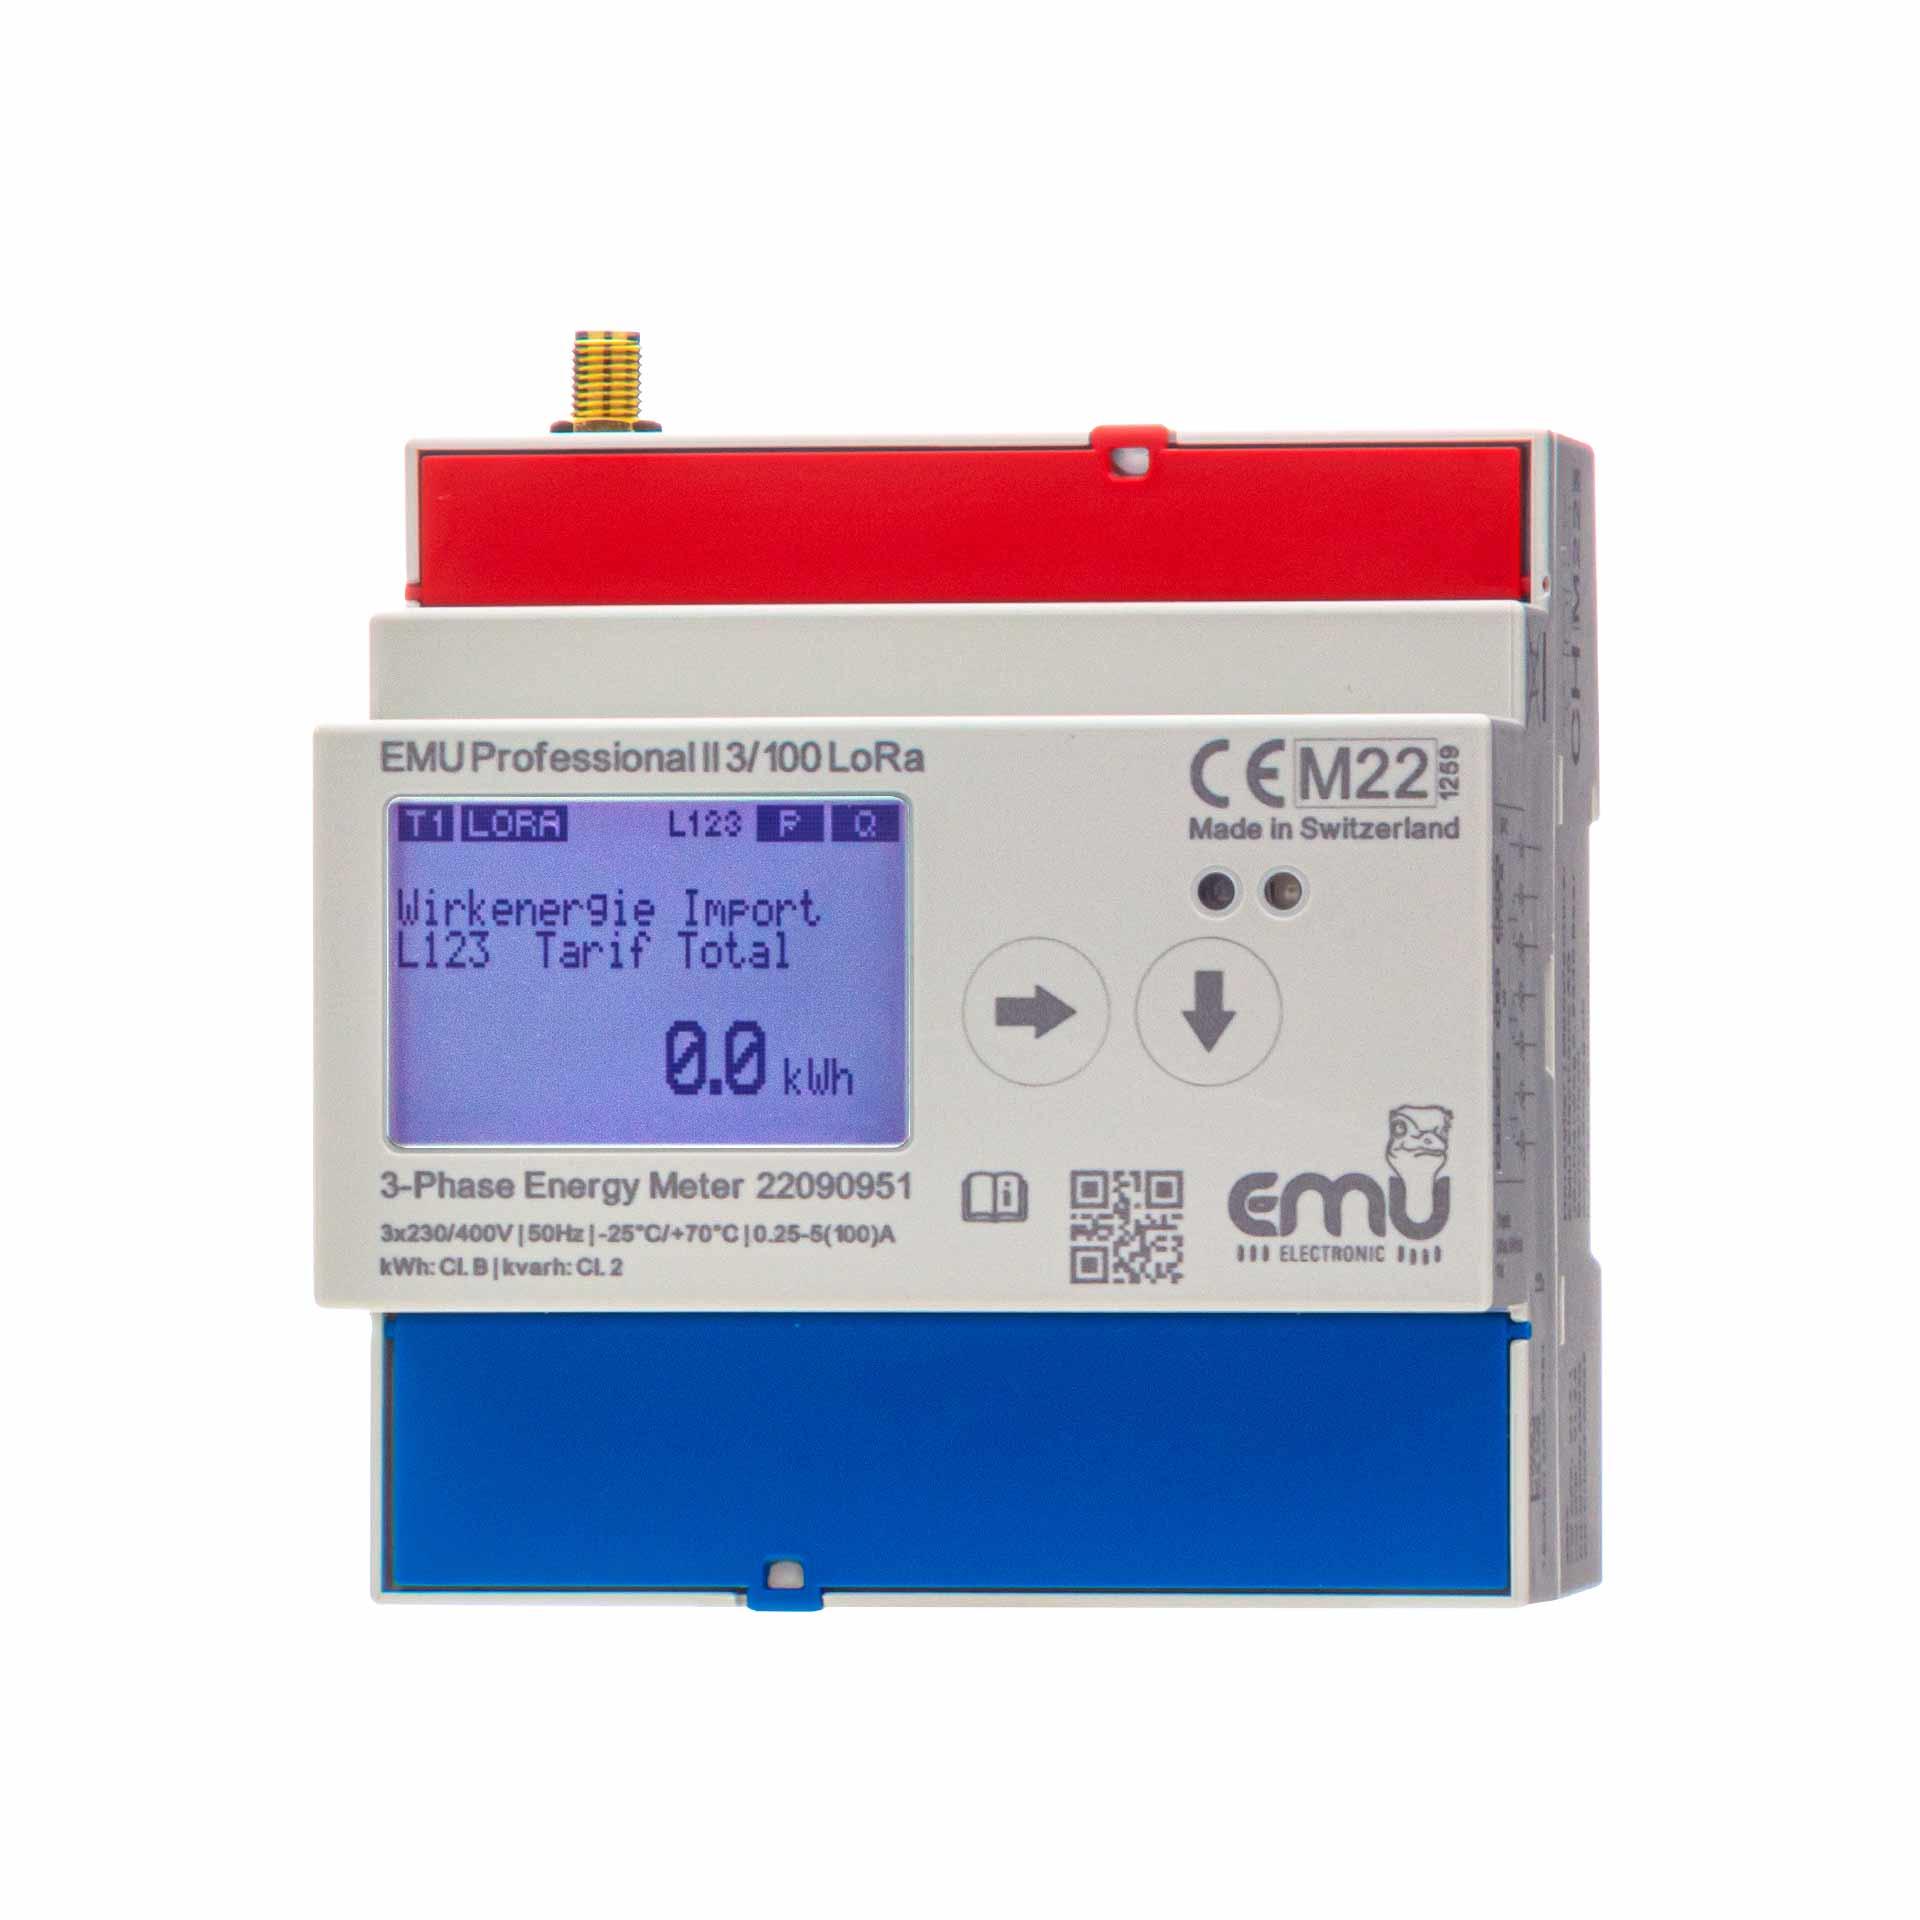 Energiezähler EMU Professional II 3/100, LoRa, E-Antenne, MID B+D Zulassung, 100A Direktmessung 3PN